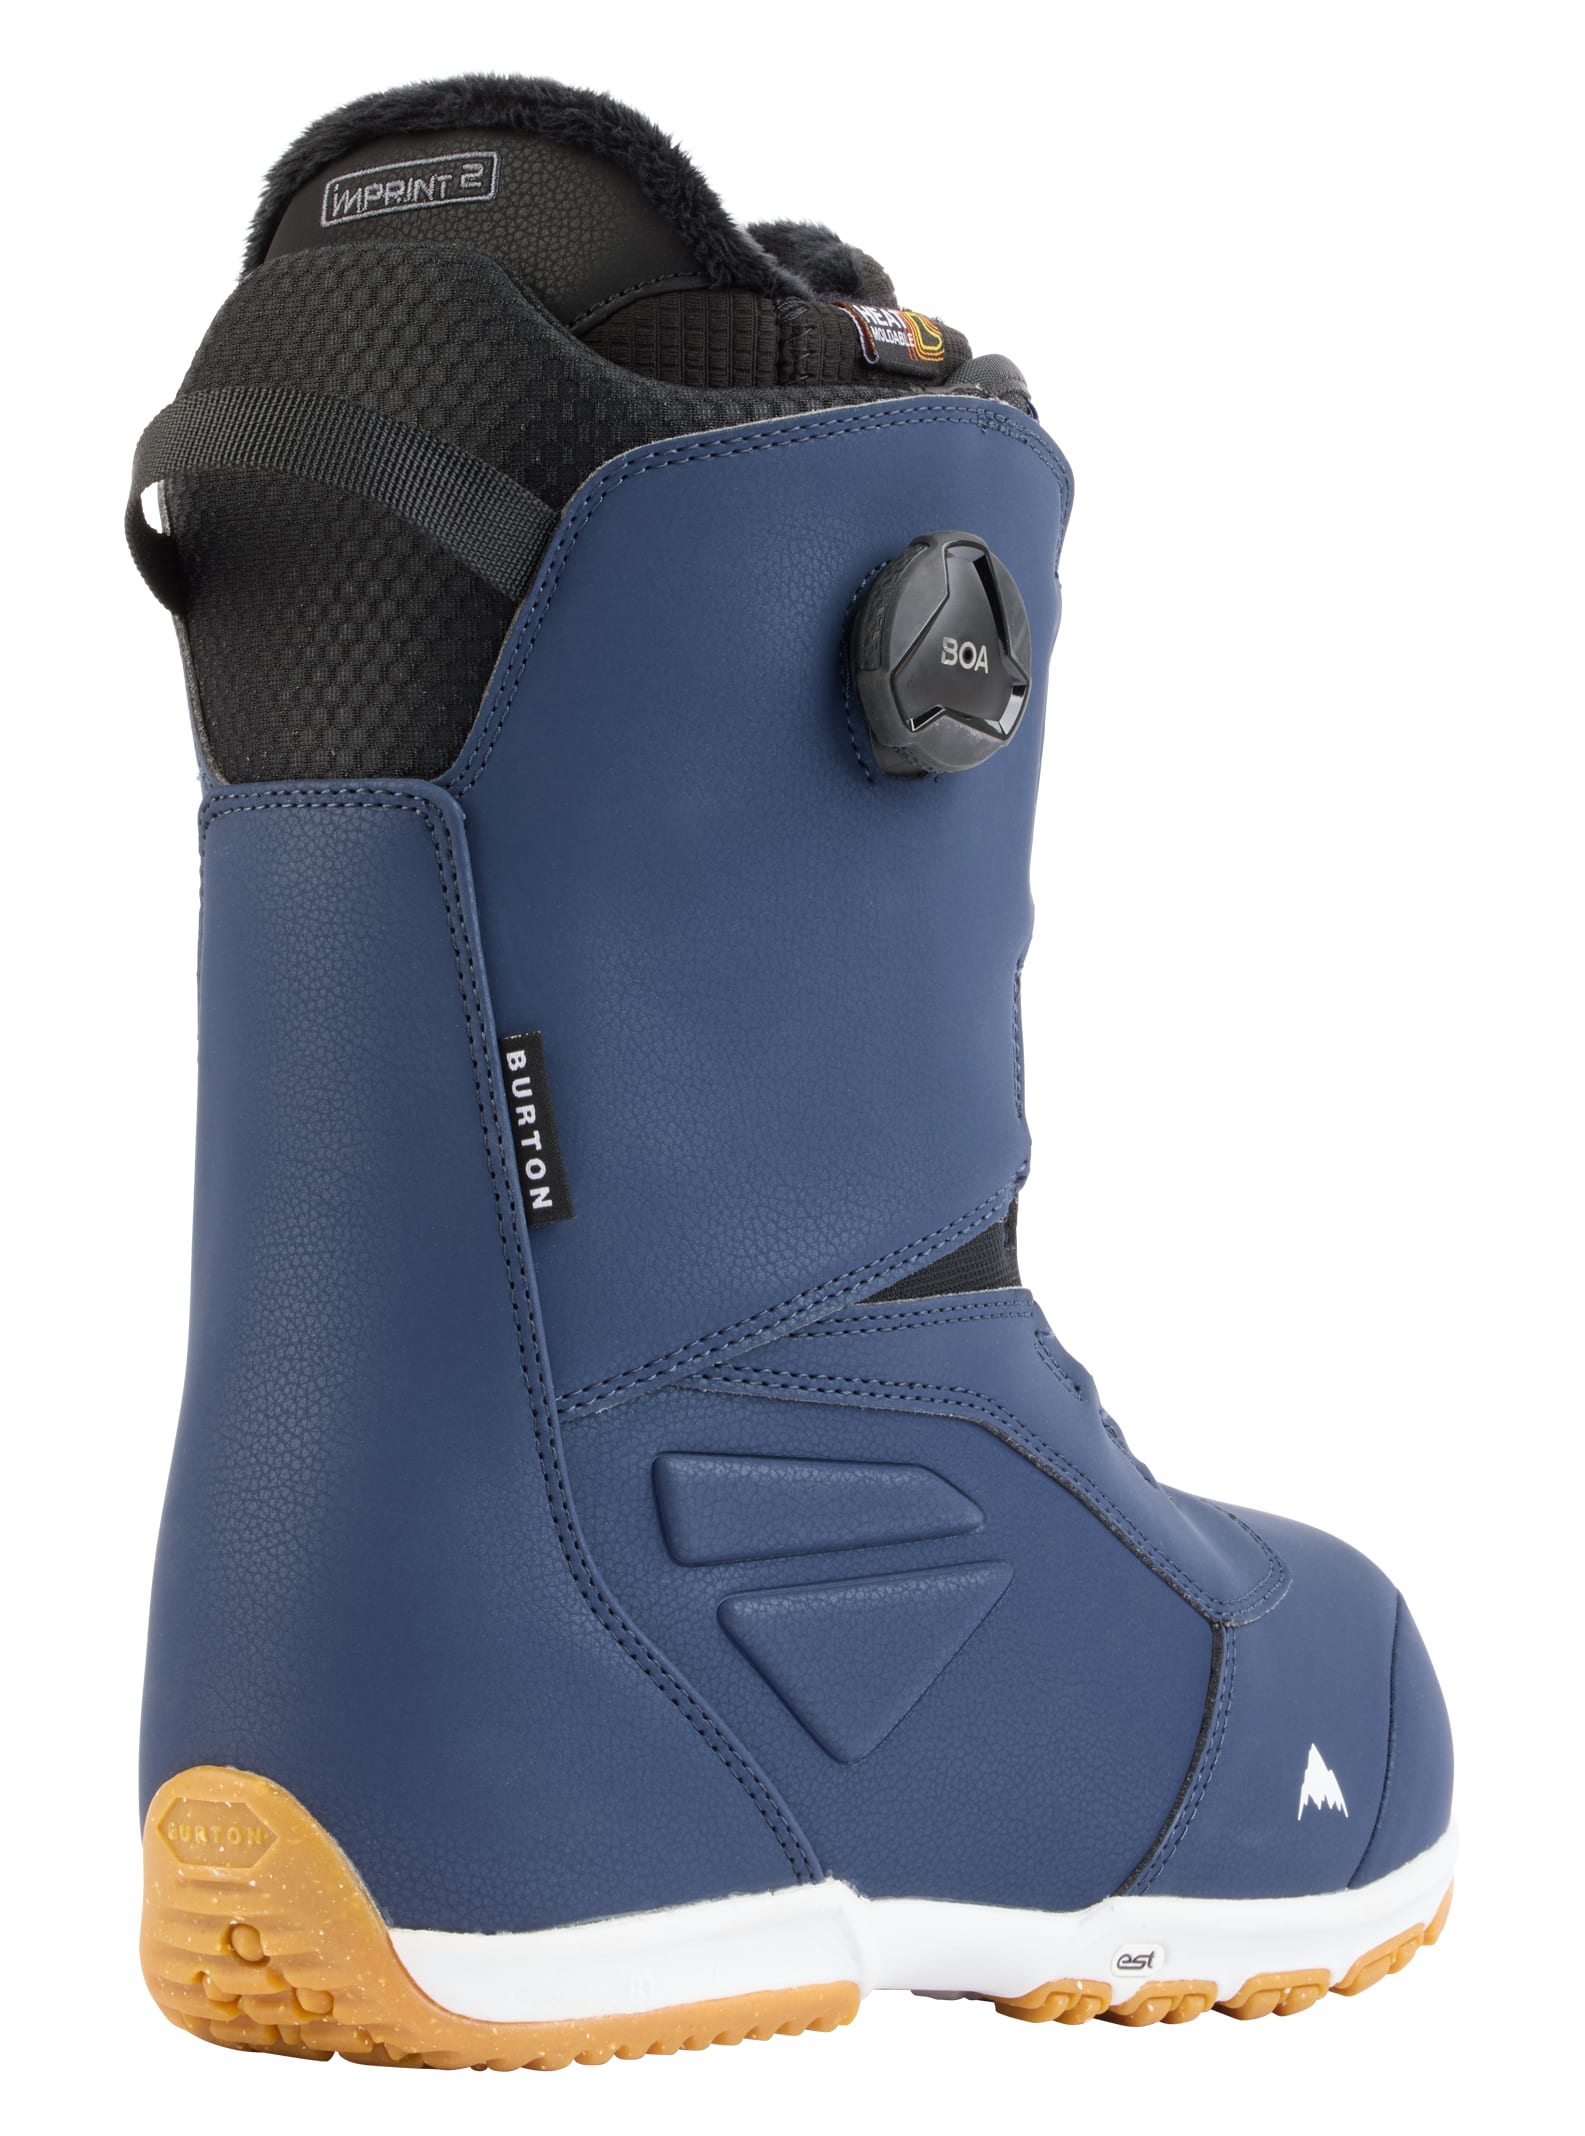 Burton Men's Burton Ruler BOA® Snowboard Boots Dress Blue